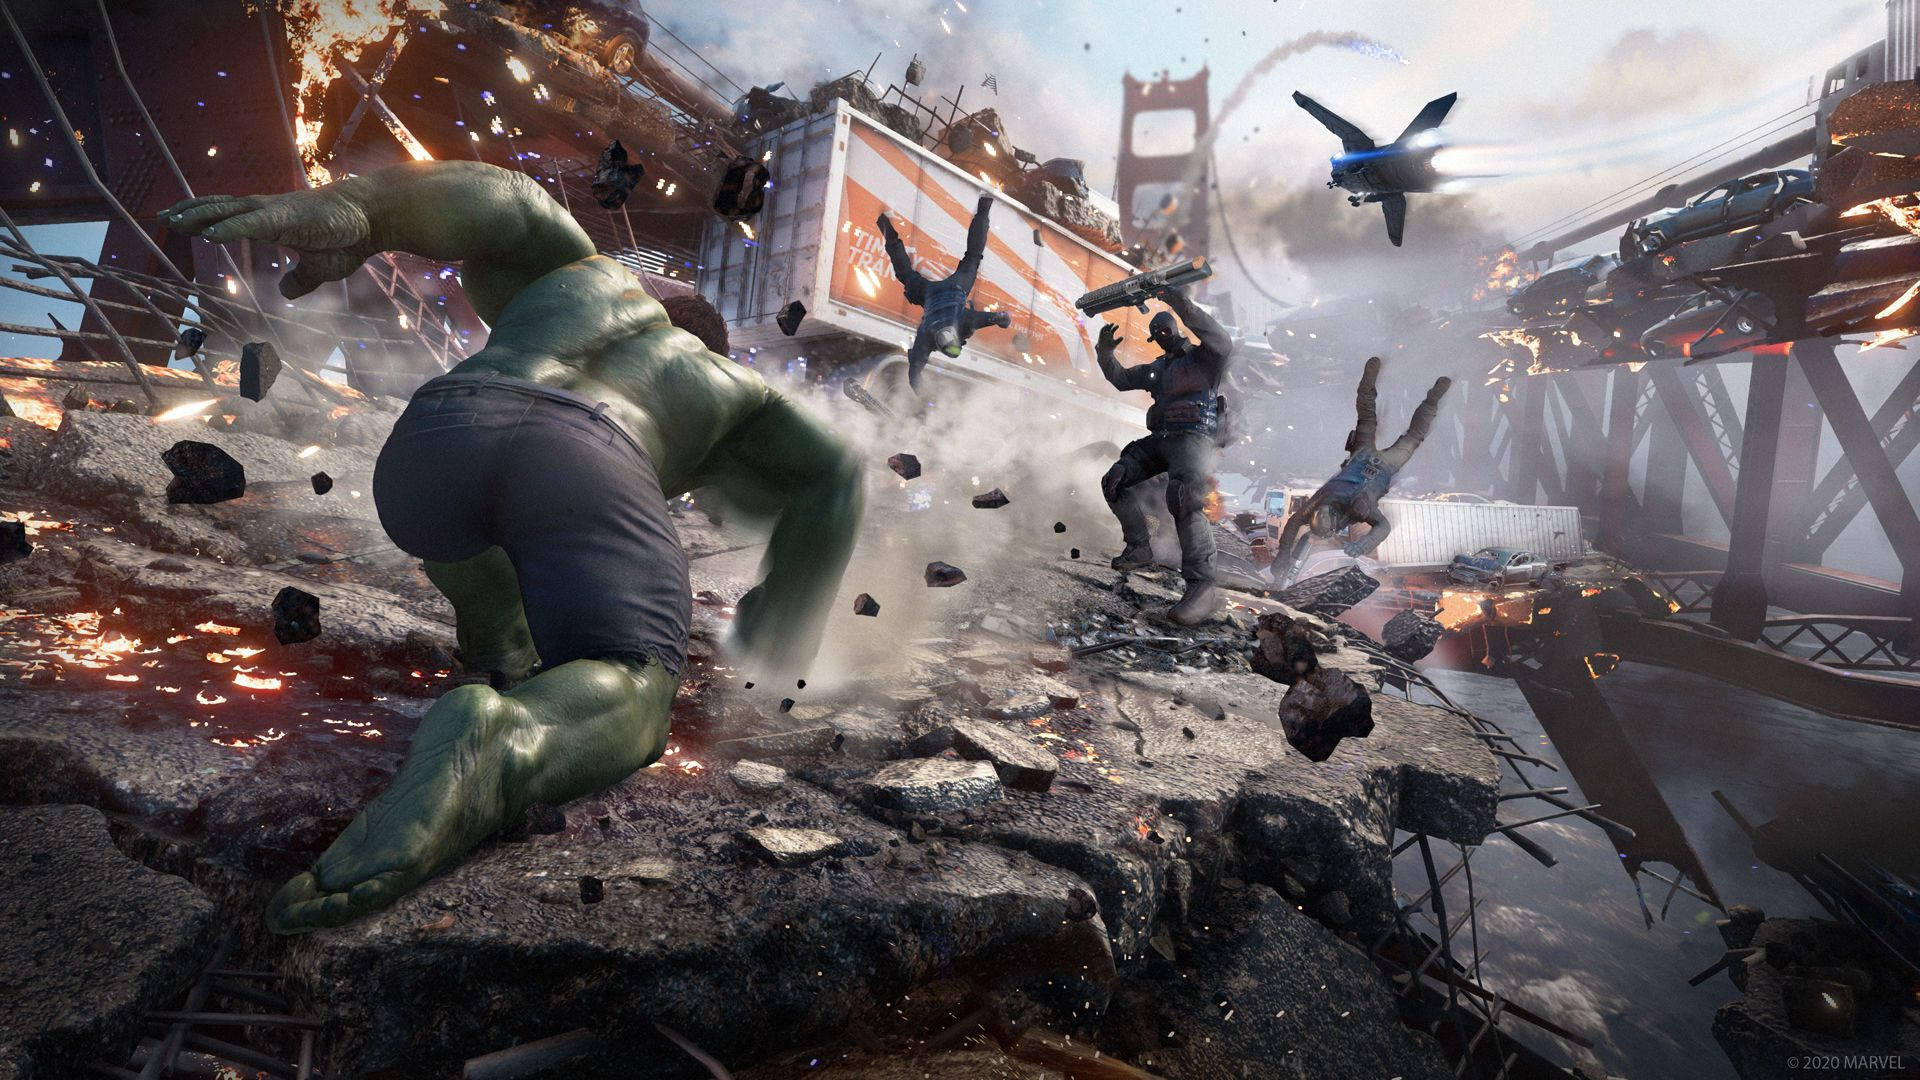 Oplev Marvel-eventyr gjort Avengers-stil med det nye PlayStation 4-spil! Wallpaper